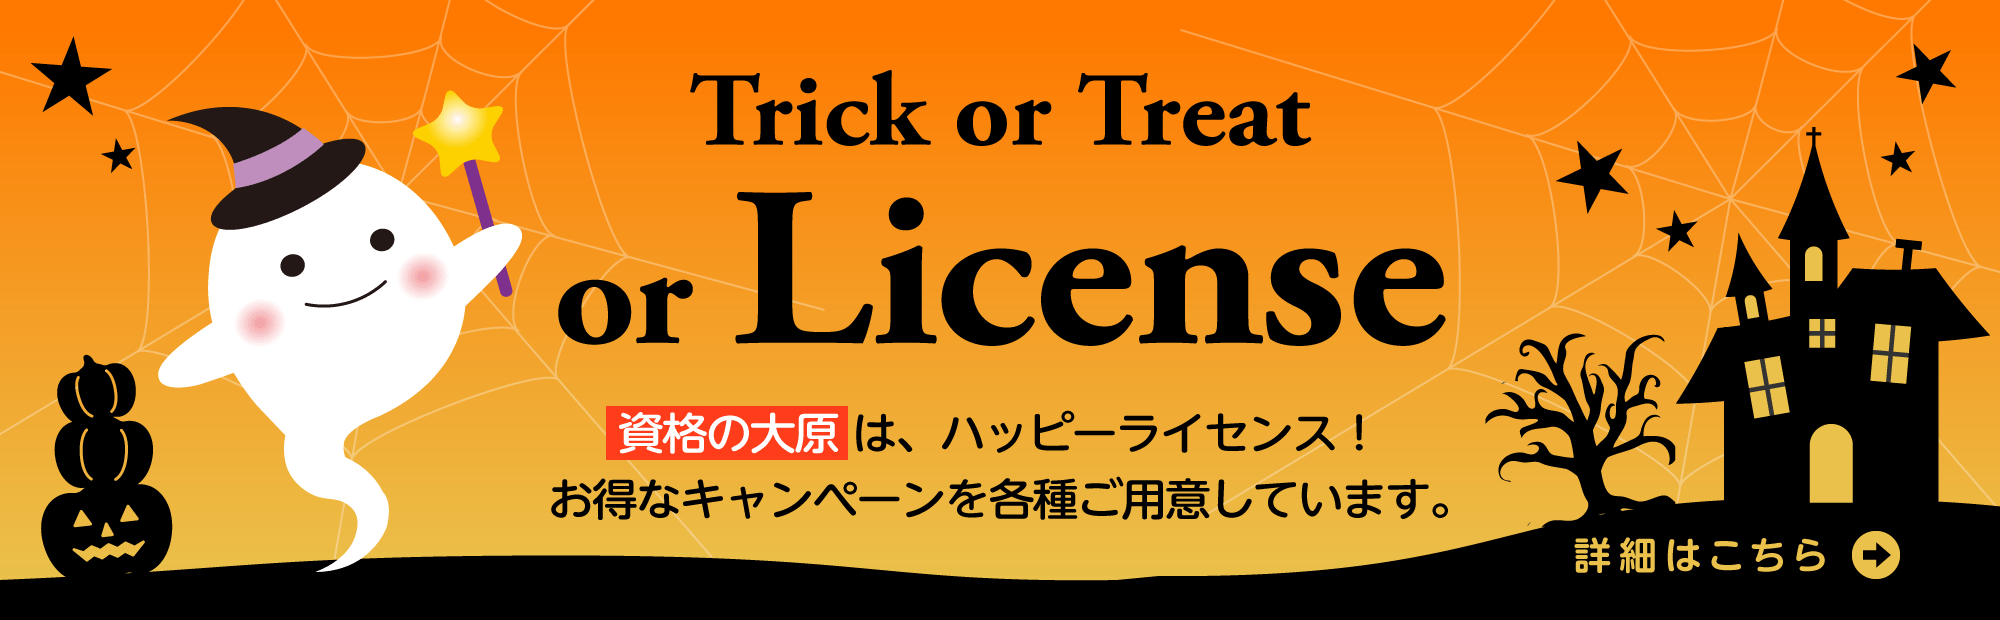 Trick or Treat or License!
資格の大原は、ハッピーライセンス。お得なキャンペーンを各種ご用意しています。